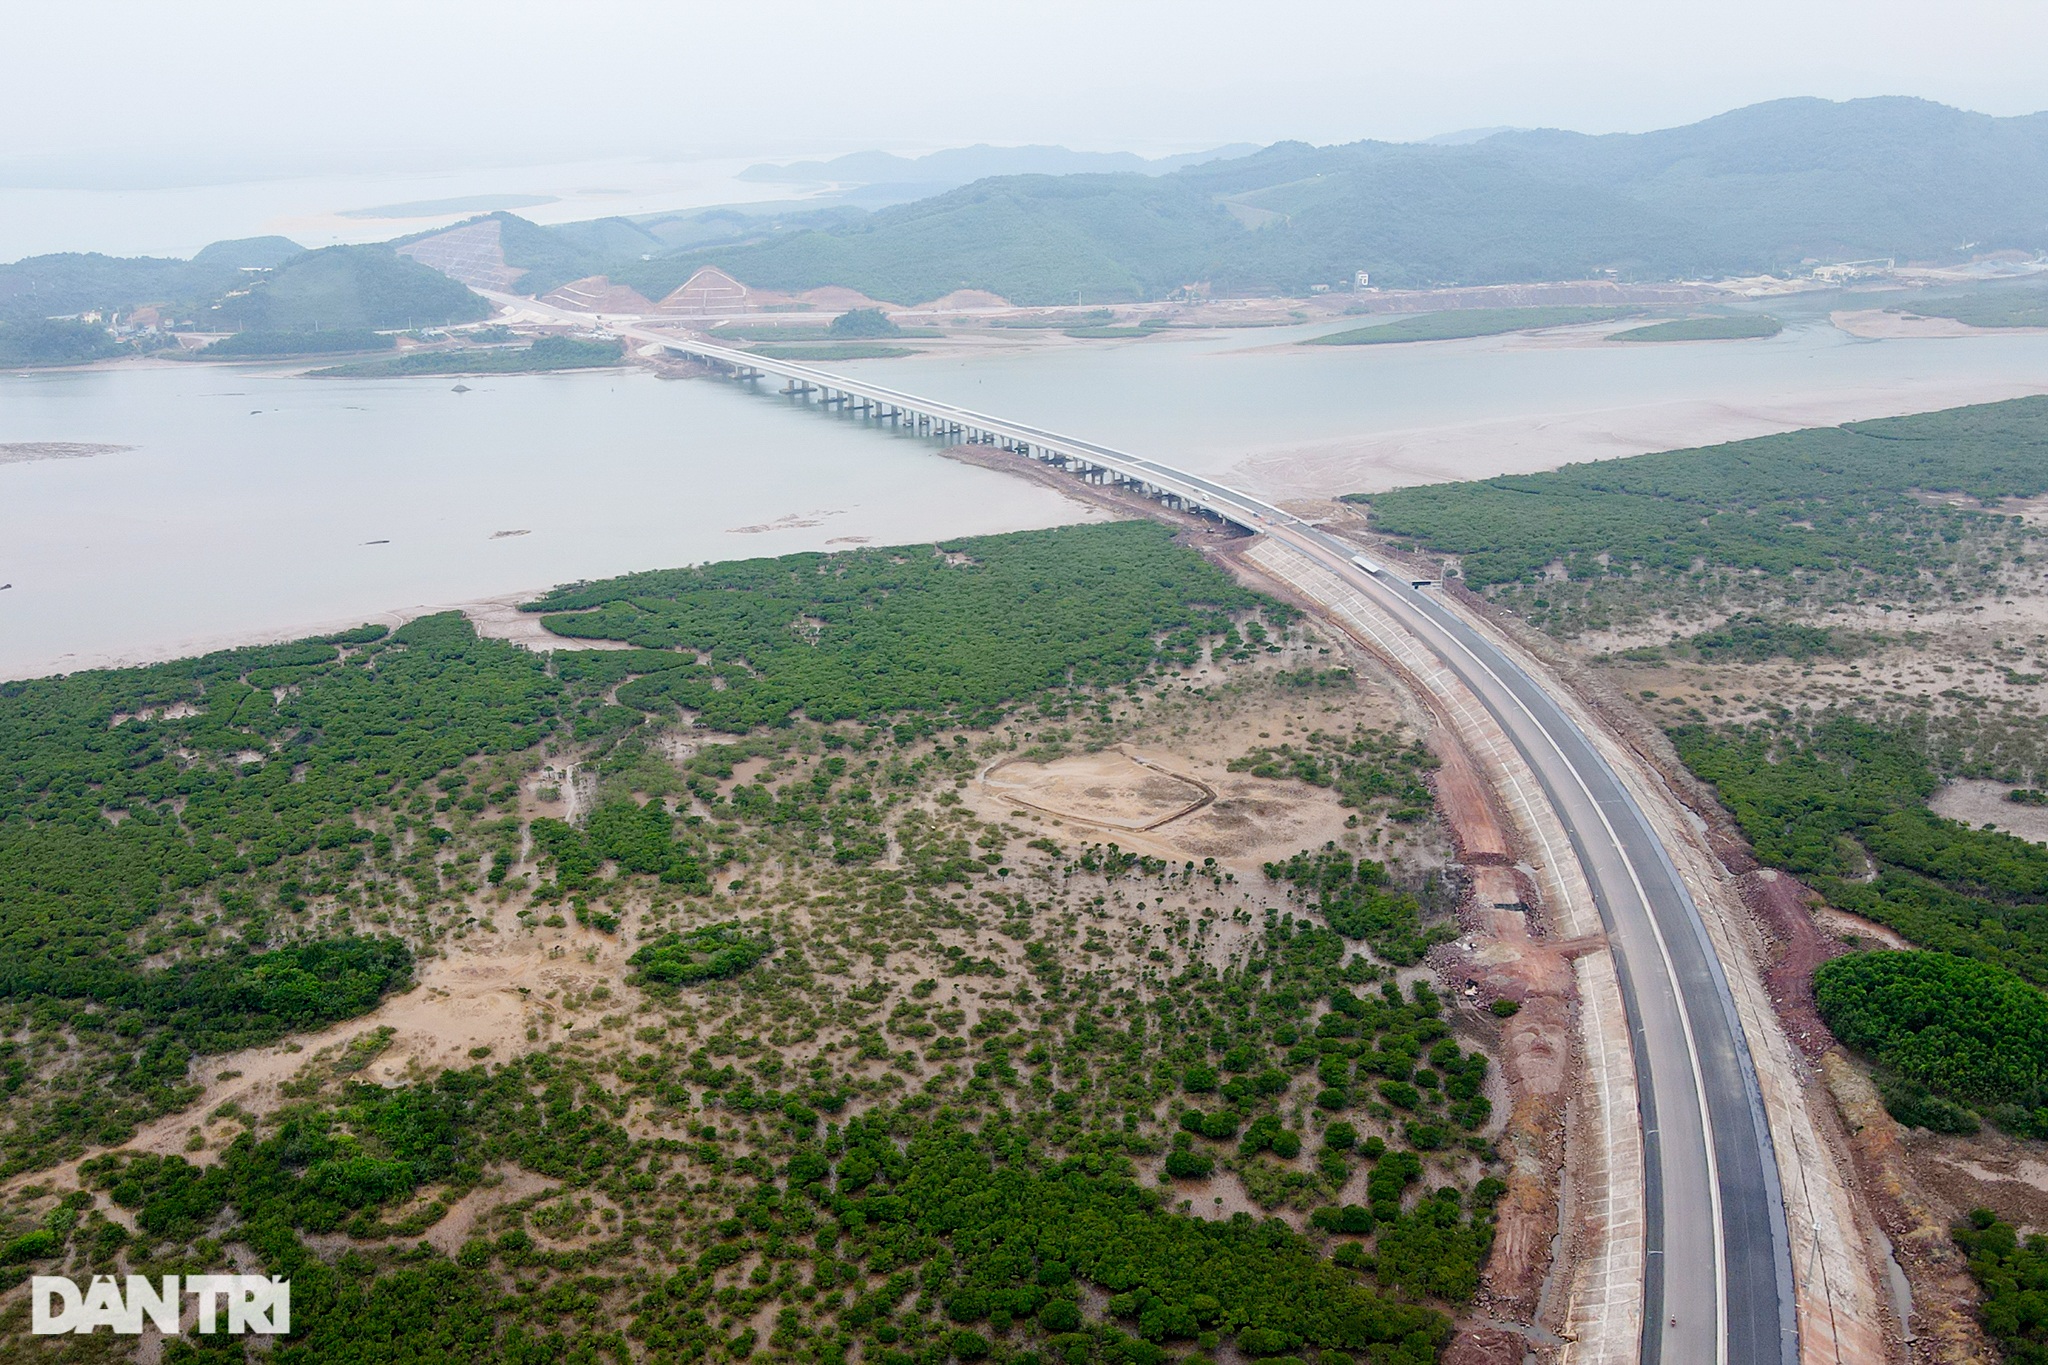 Chiêm ngưỡng cầu vượt biển 800 tỷ đồng dài nhất tỉnh Quảng Ninh - 10